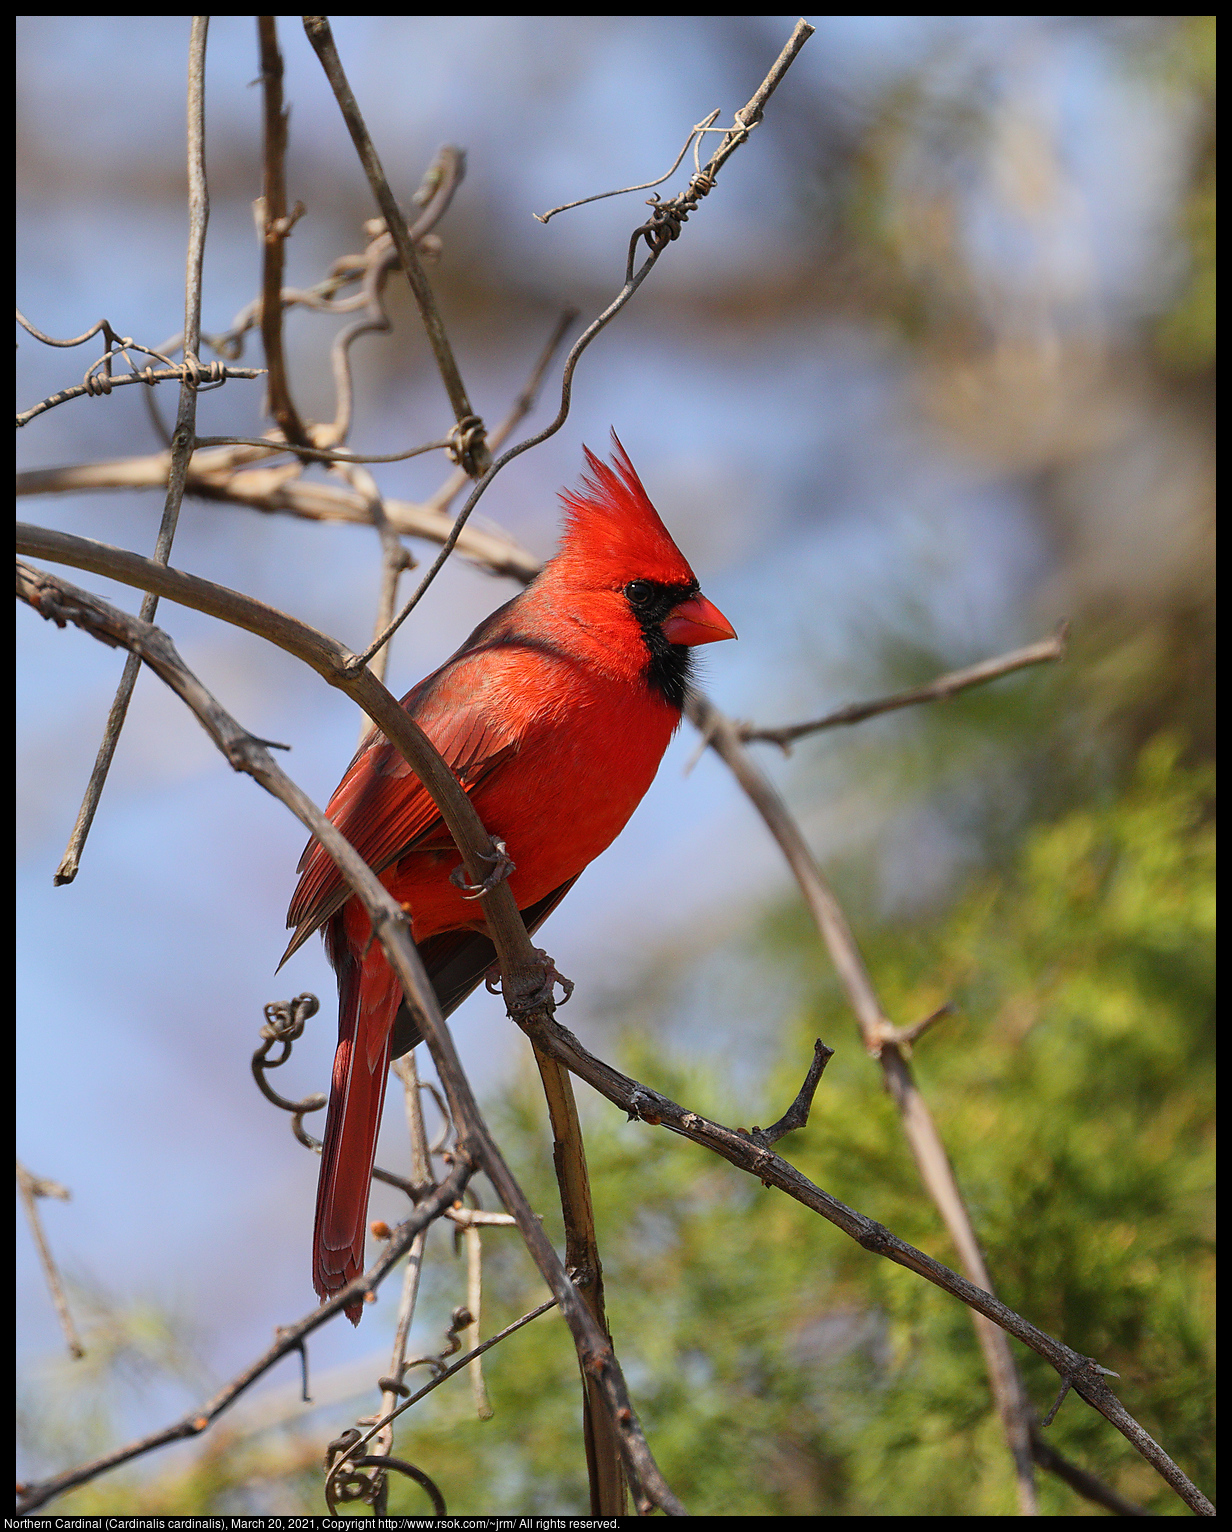 Northern Cardinal (Cardinalis cardinalis), March 20, 2021